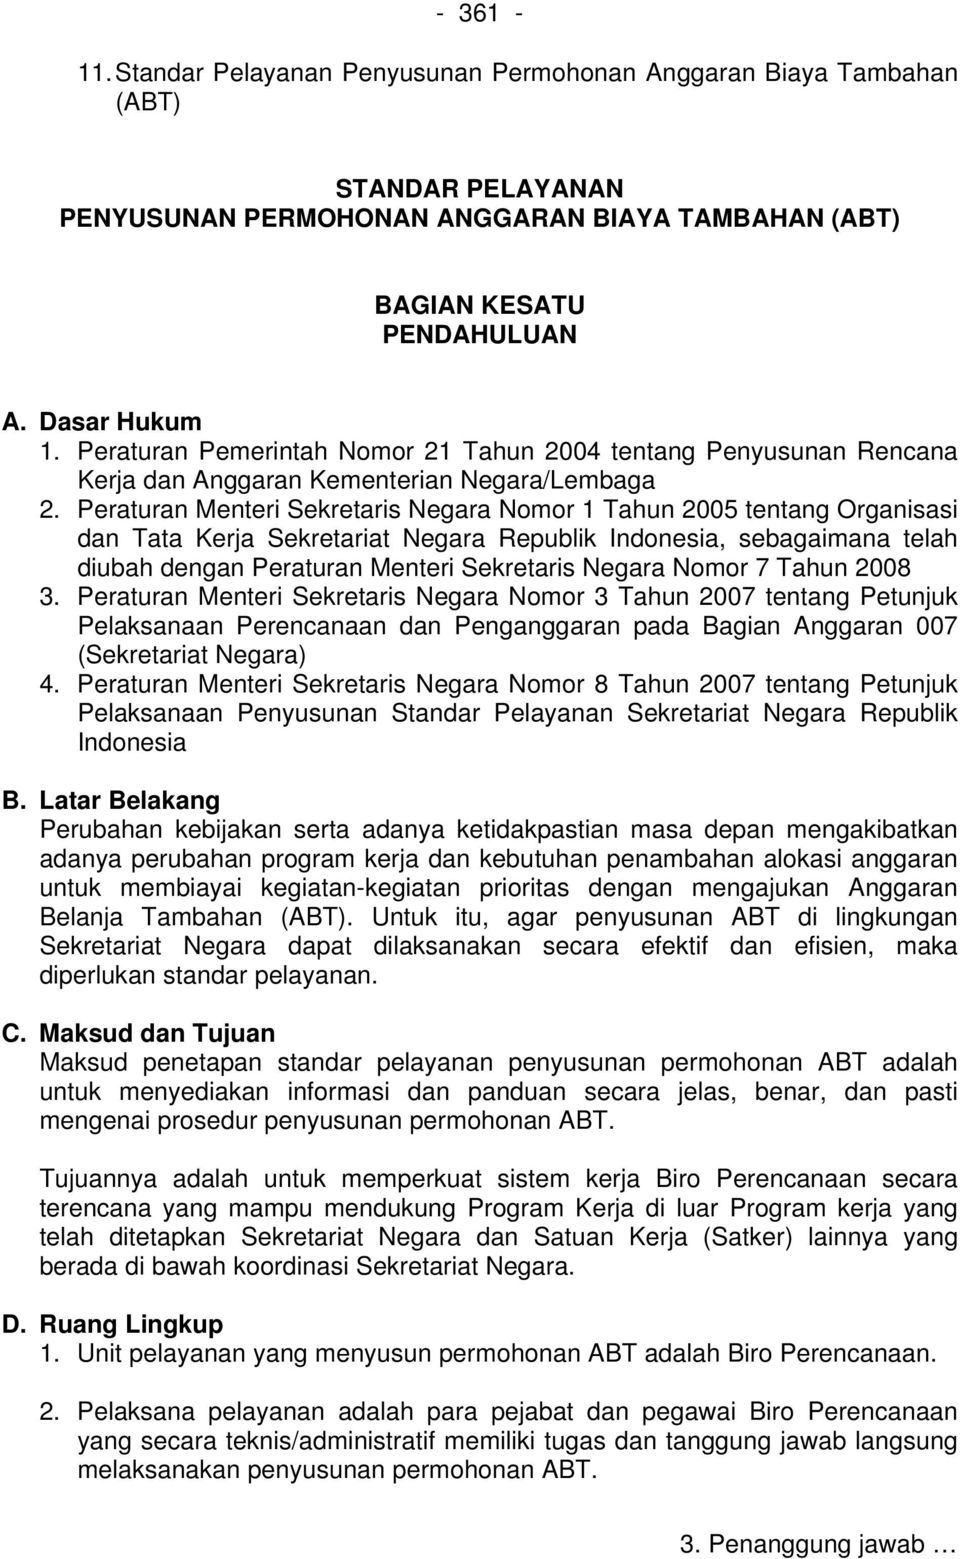 Peraturan Menteri Sekretaris Negara Nomor 1 Tahun 2005 tentang Organisasi dan Tata Kerja Sekretariat Negara Republik Indonesia, sebagaimana telah diubah dengan Peraturan Menteri Sekretaris Negara